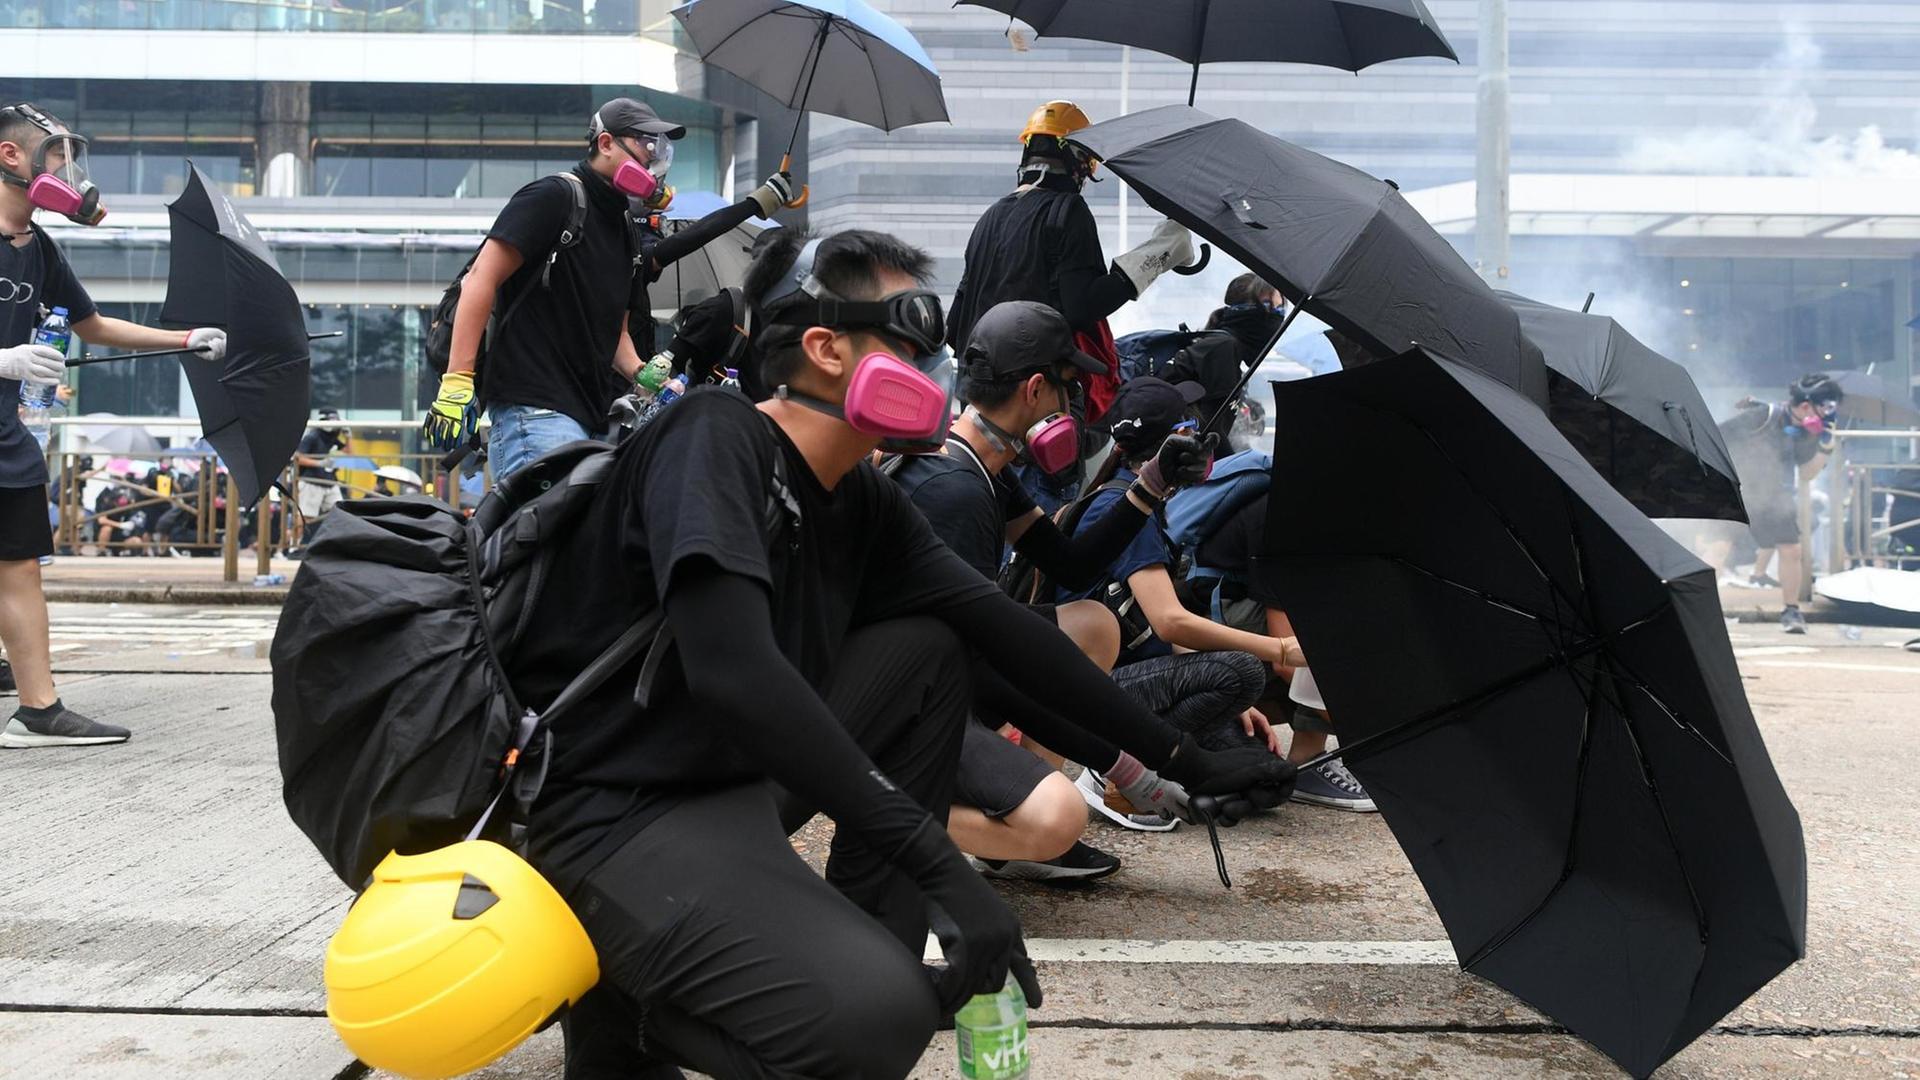 Das Bild zeigt protestierende Menschen auf der Straße in Hongkong. Sie haben aufgespannte Regenschirme, um sich vor der Polizei zu schützen.